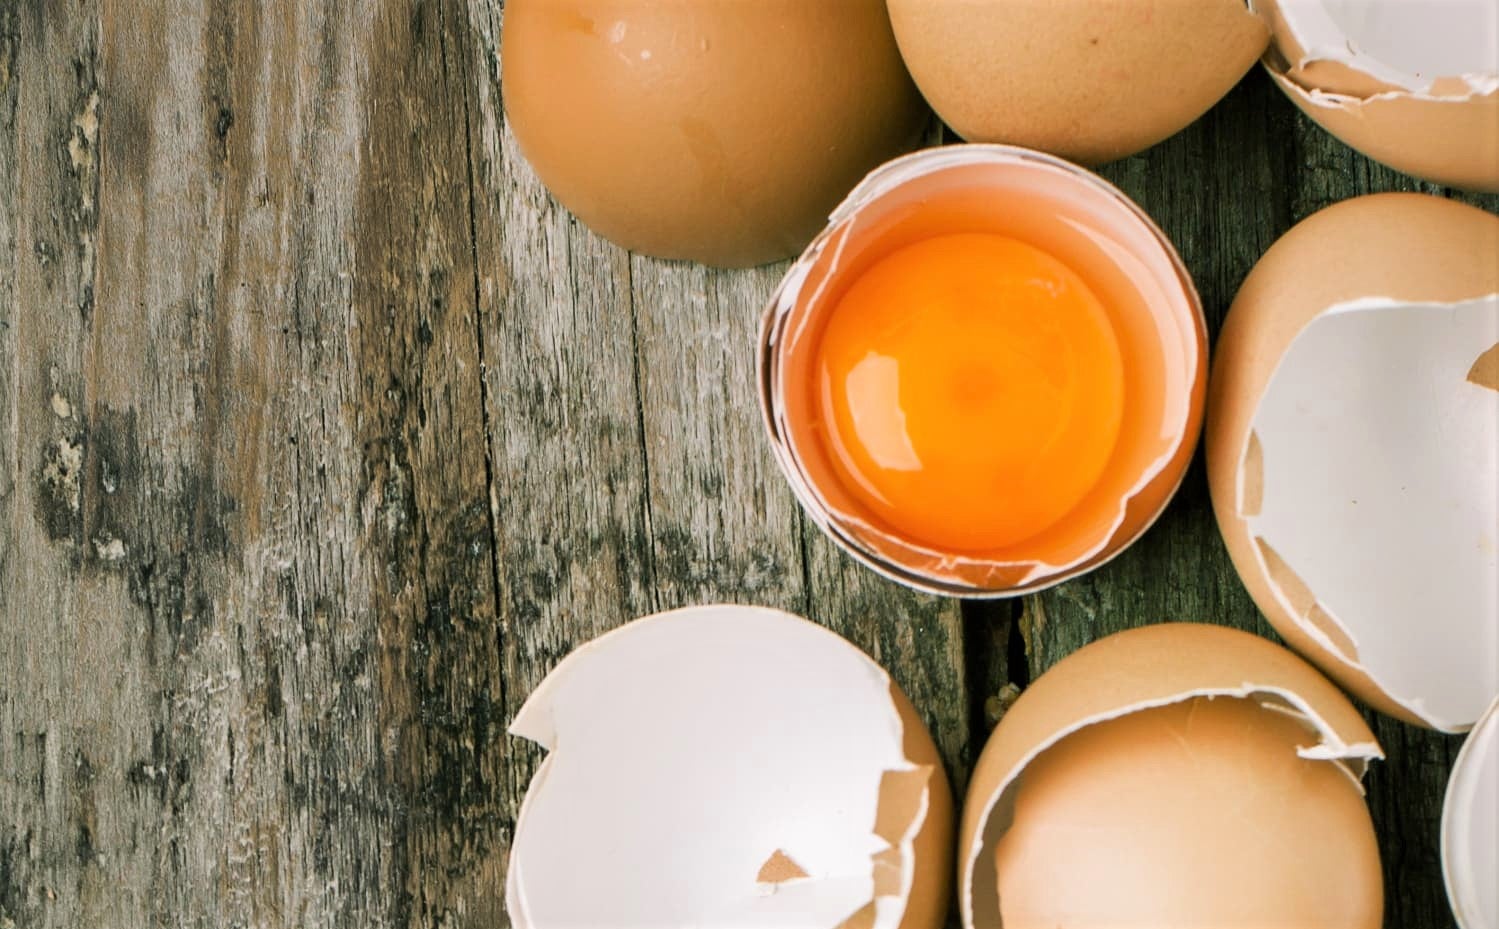 Are Darker Egg Yolks Healthier Than Light Egg Yolks?